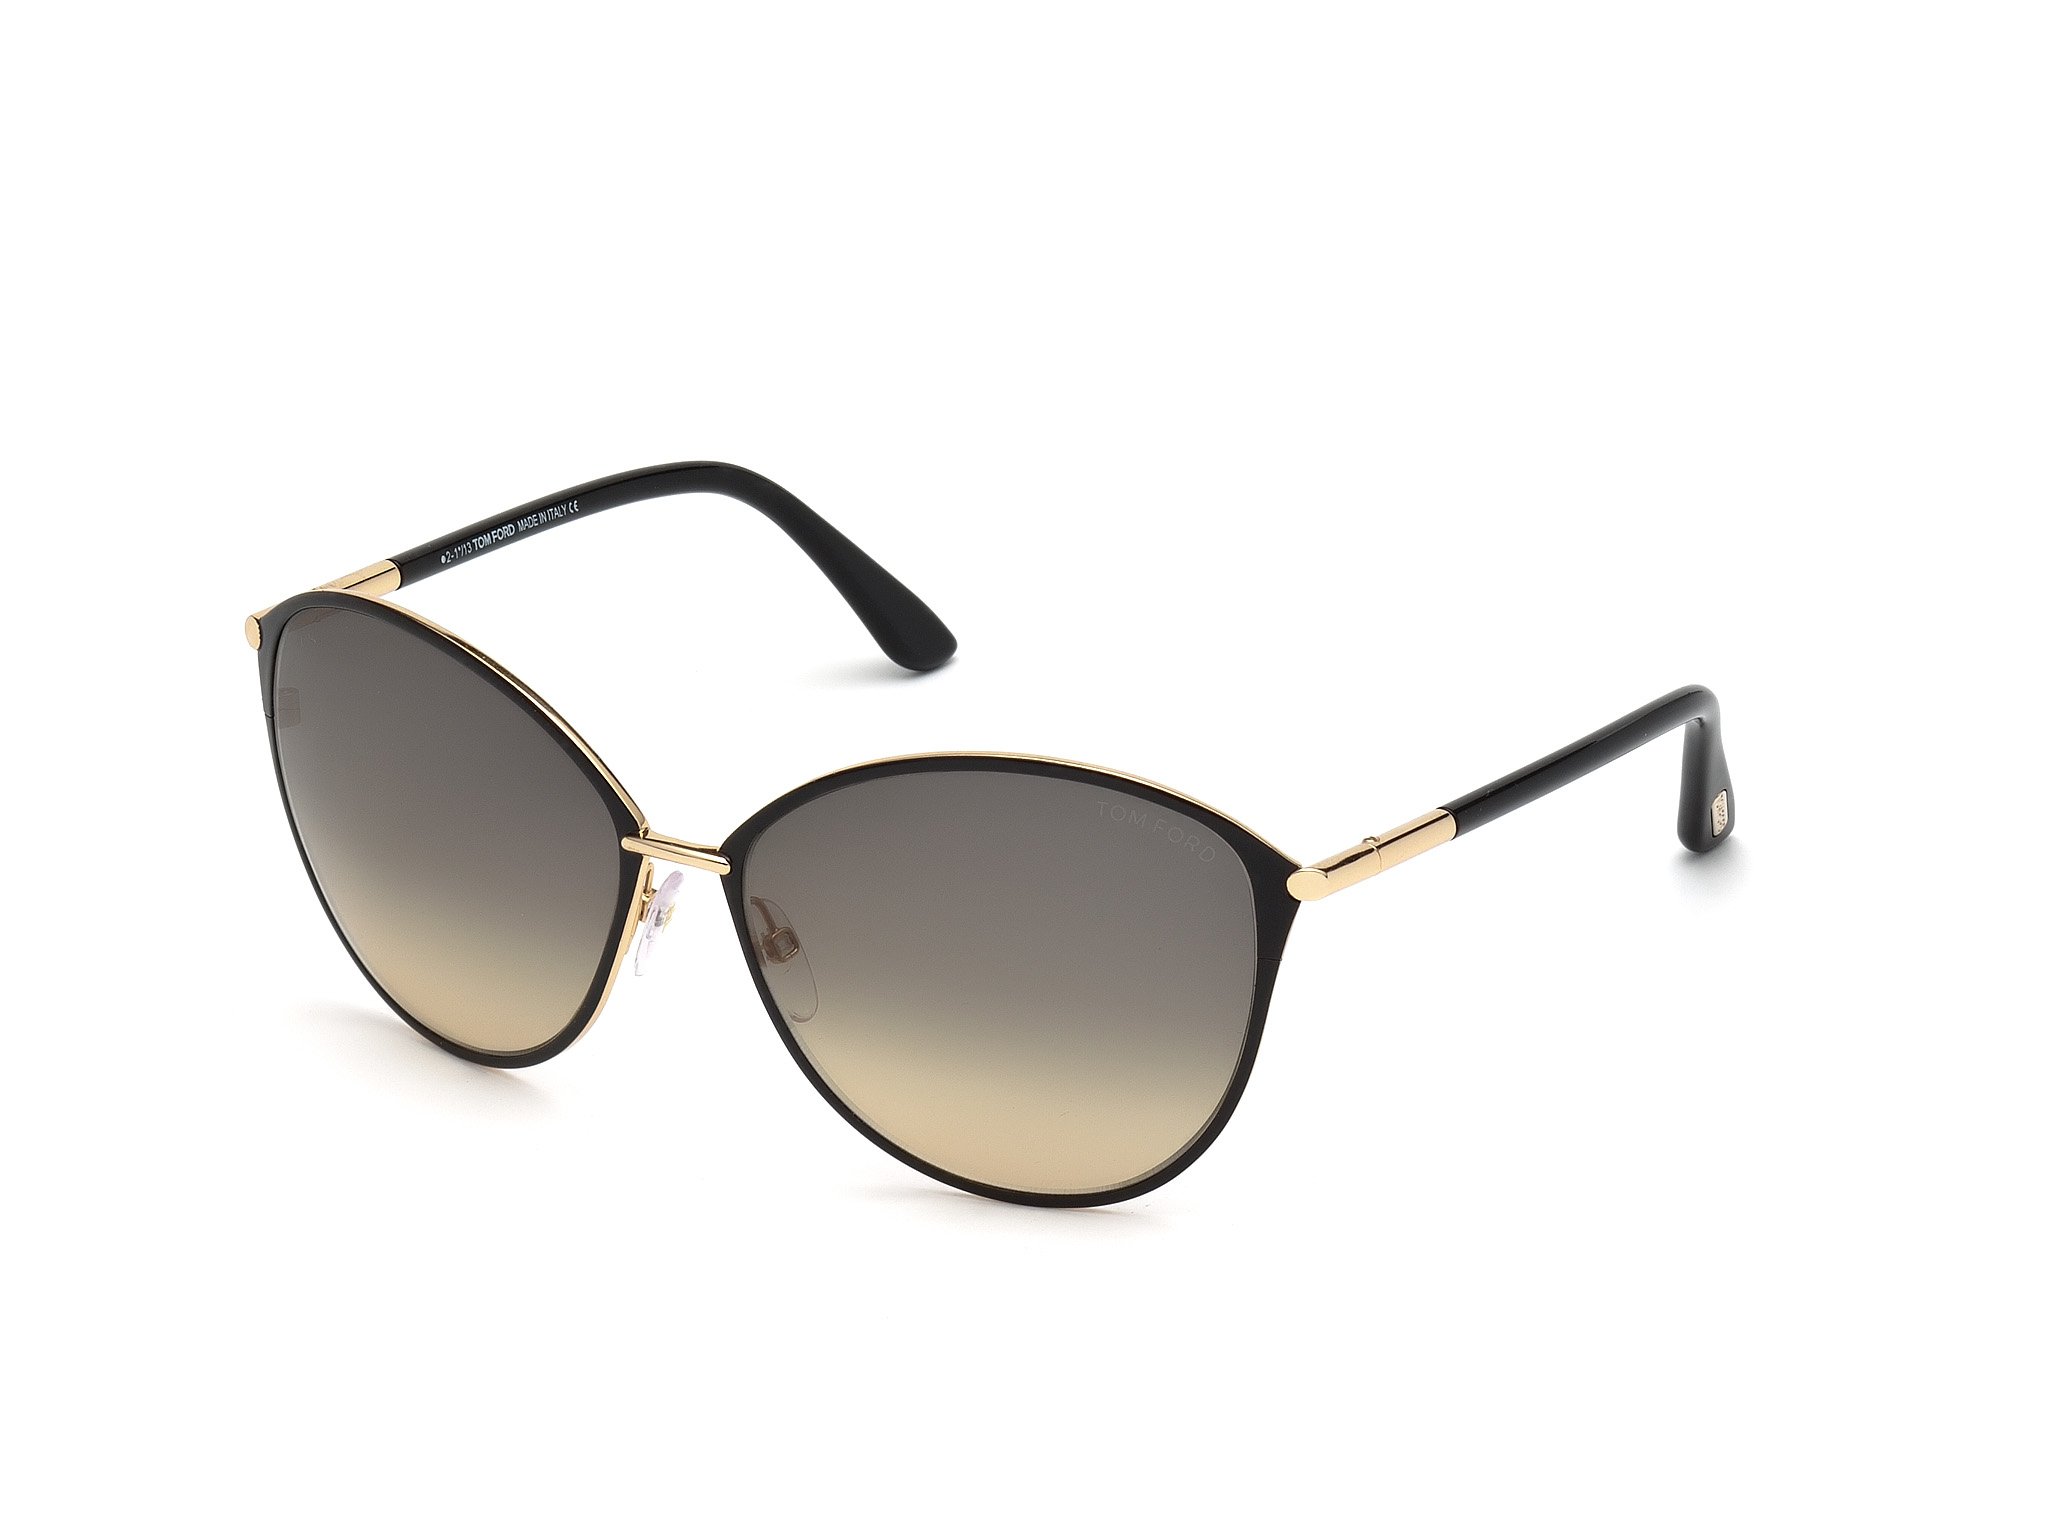 Das Bild zeigt die Sonnenbrille FT0320 28B von der Marke Tom Ford in schwarz/gold.